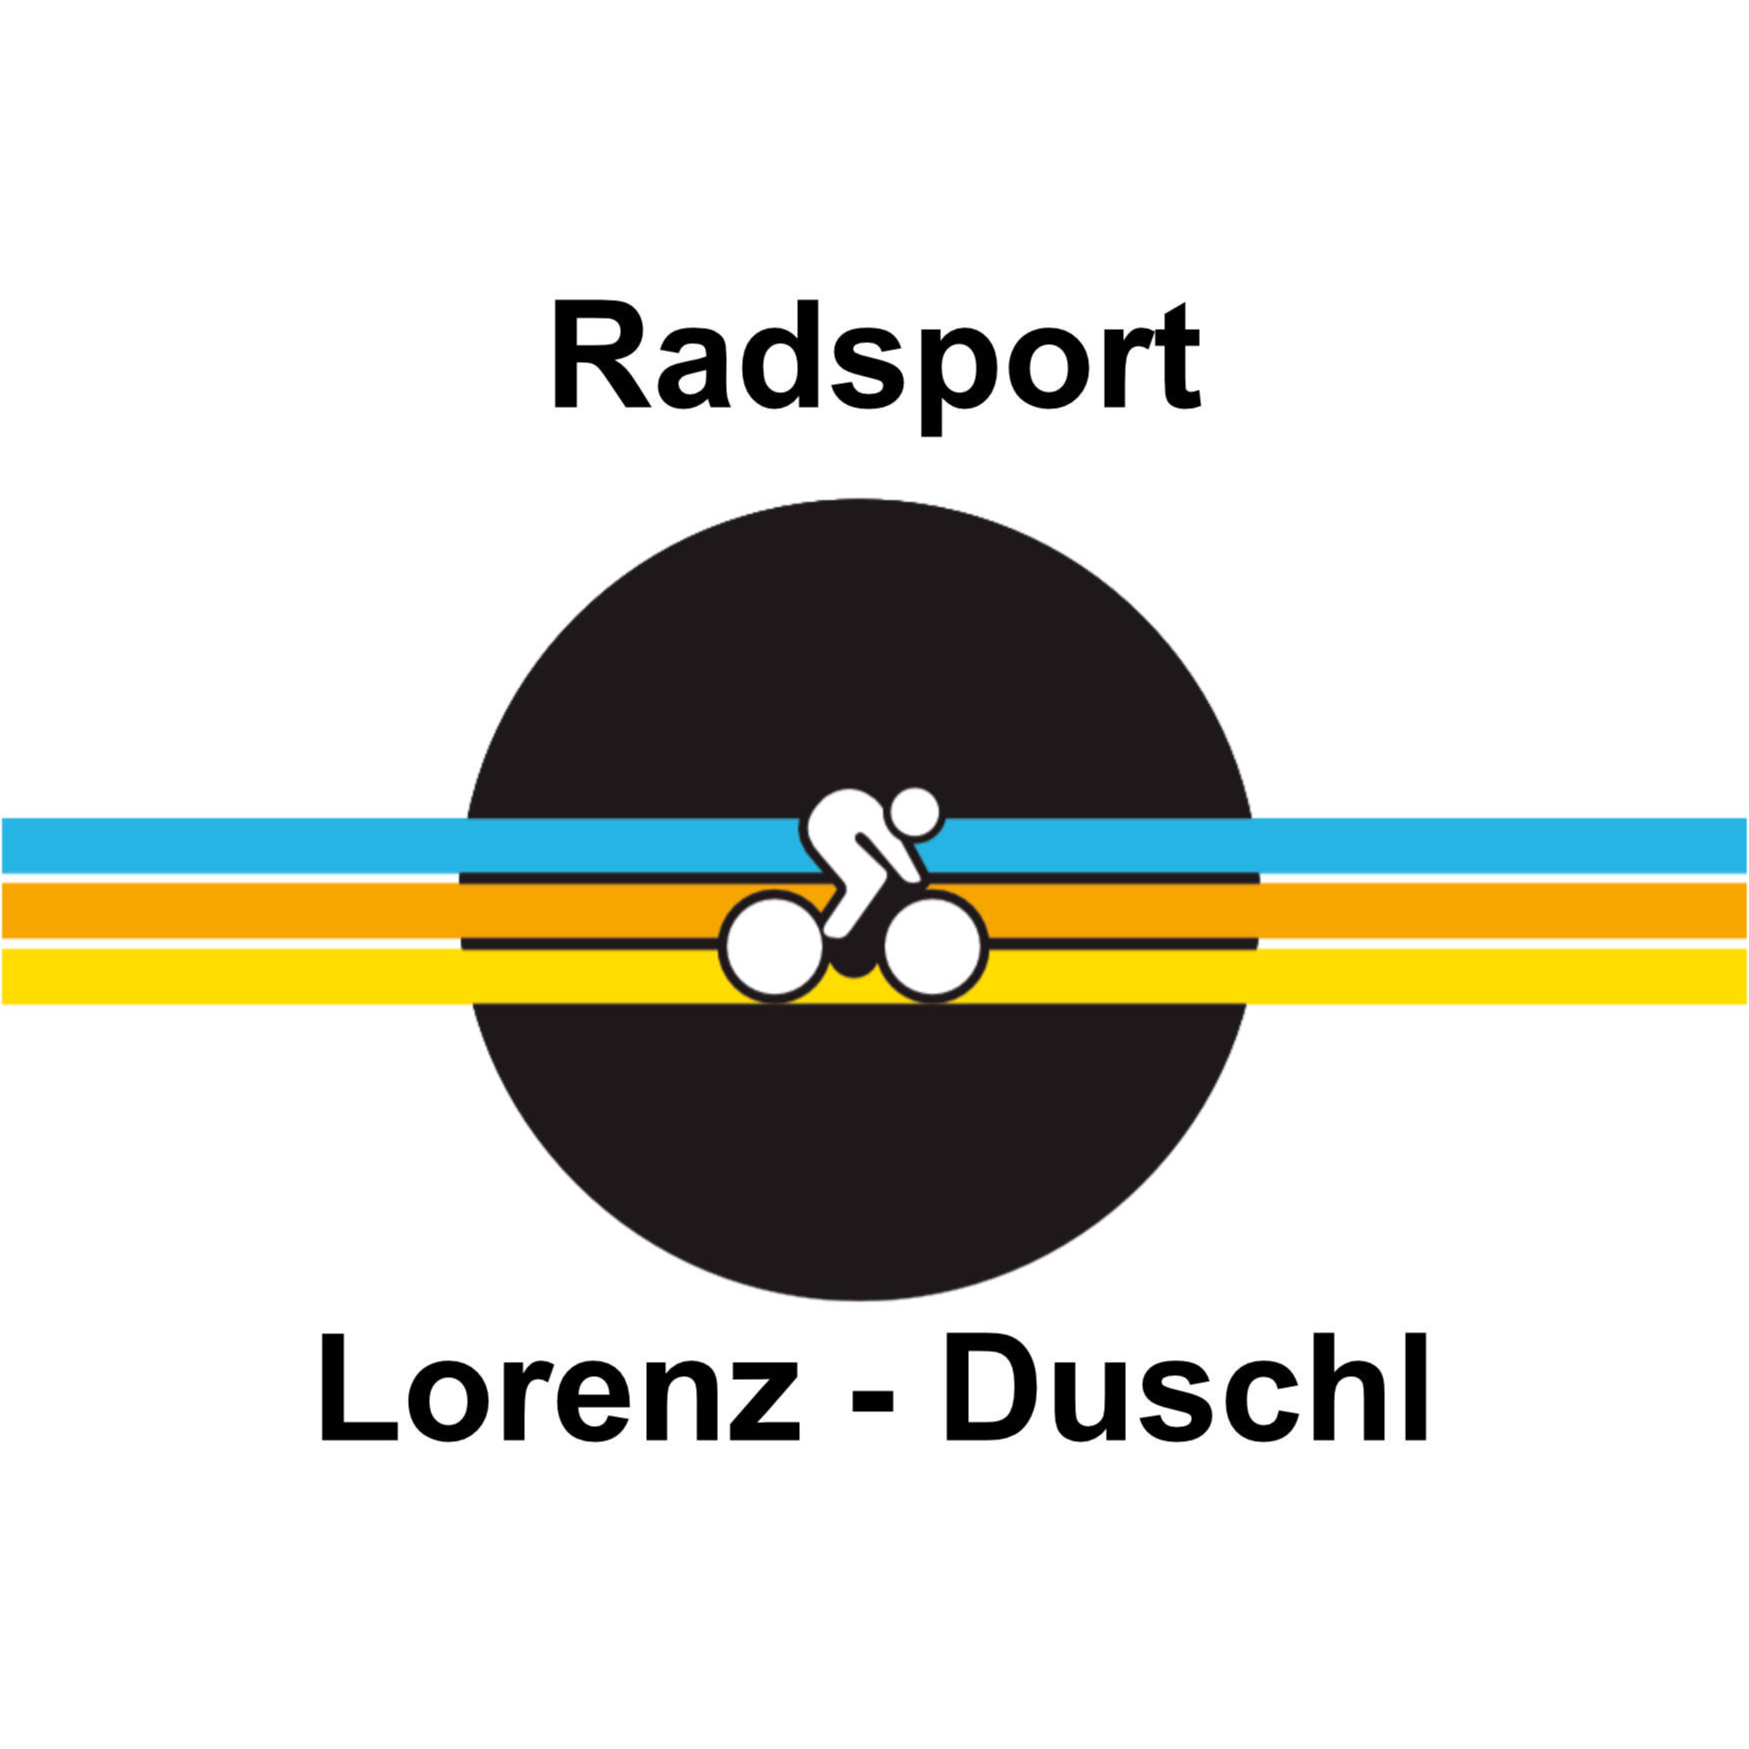 Radsport Duschl - R. Lorenz Logo